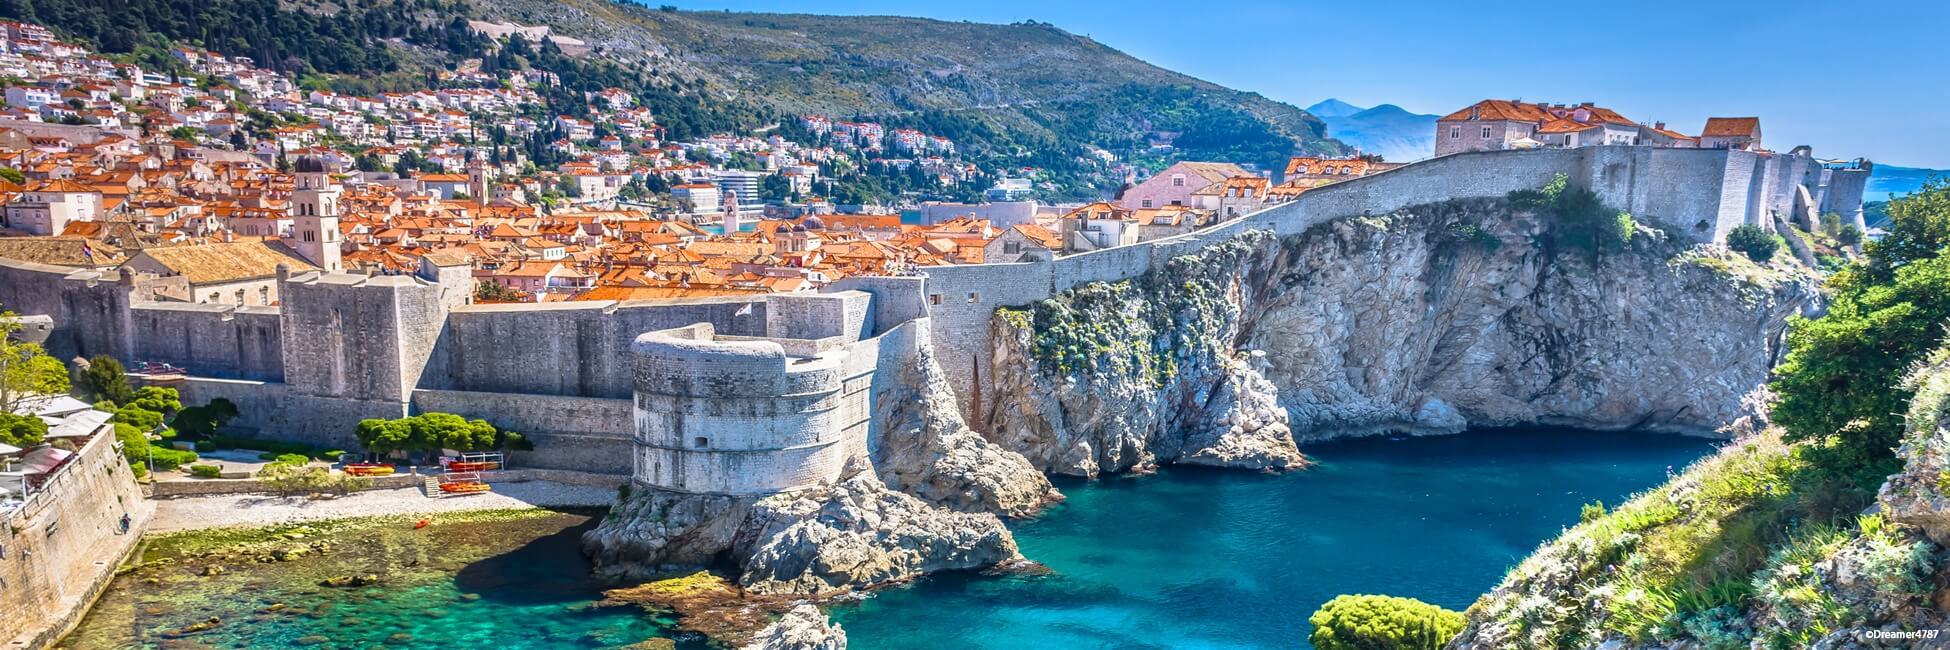 PID_PP - De Atenas a Dubrovnik El canal de Corinto, Meteora y las bocas de Kotor